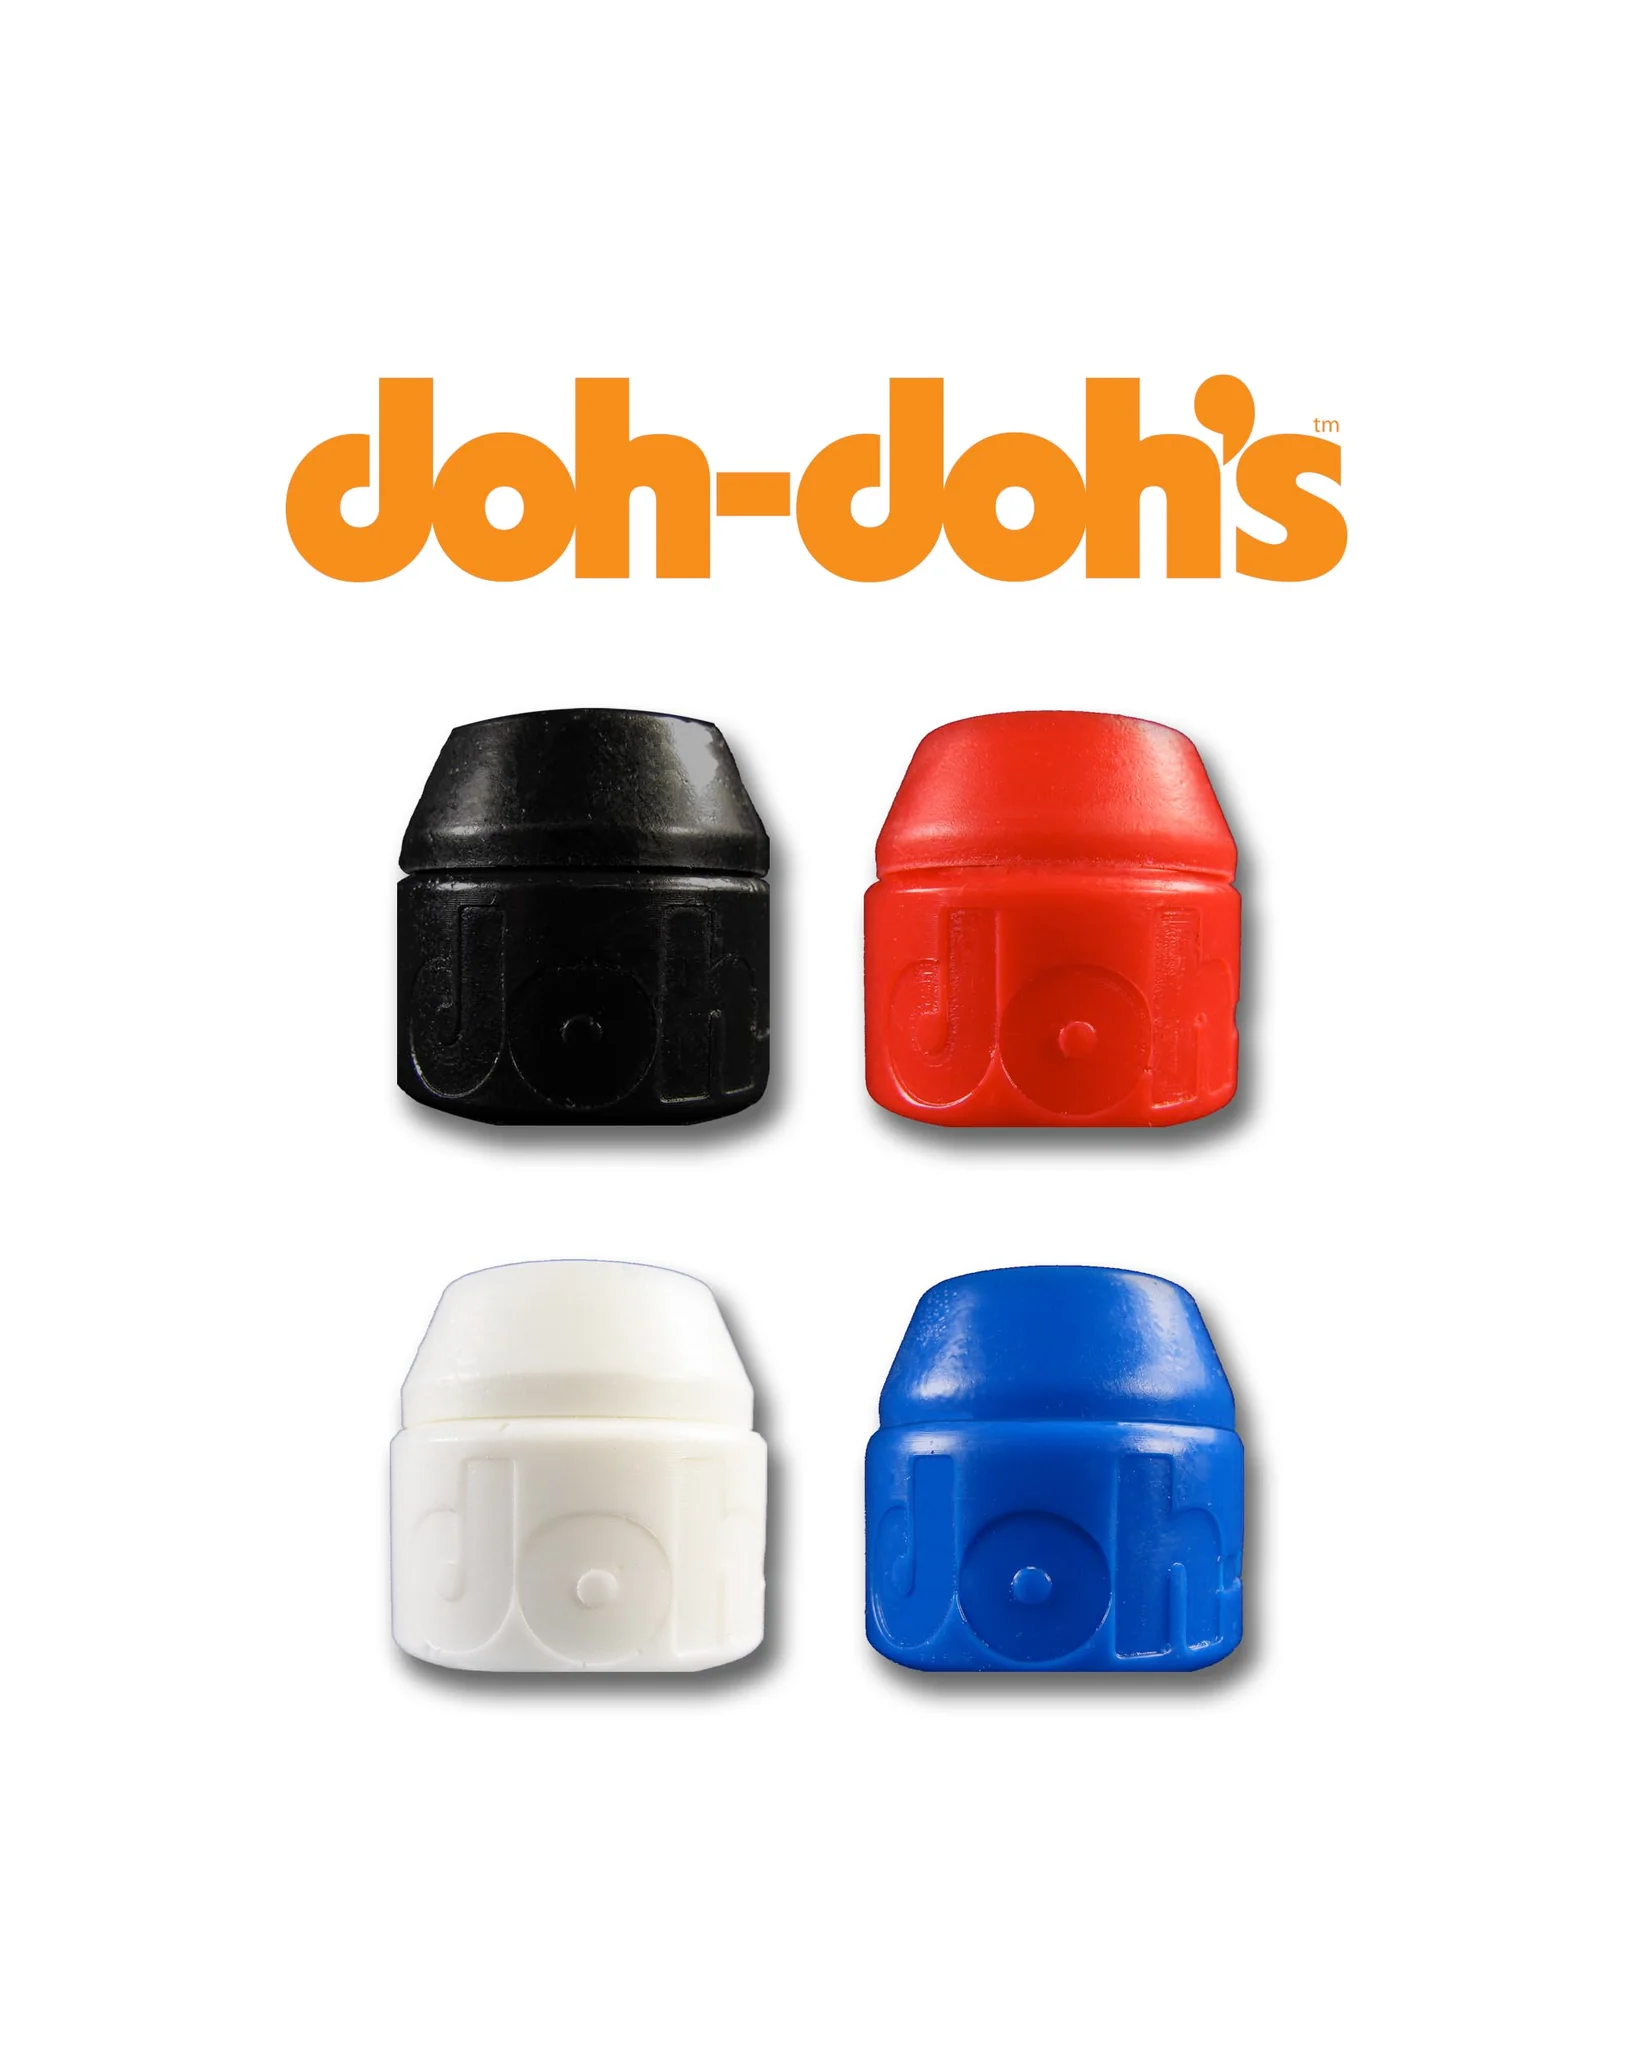 Shorty’s – Doh Doh Bushings